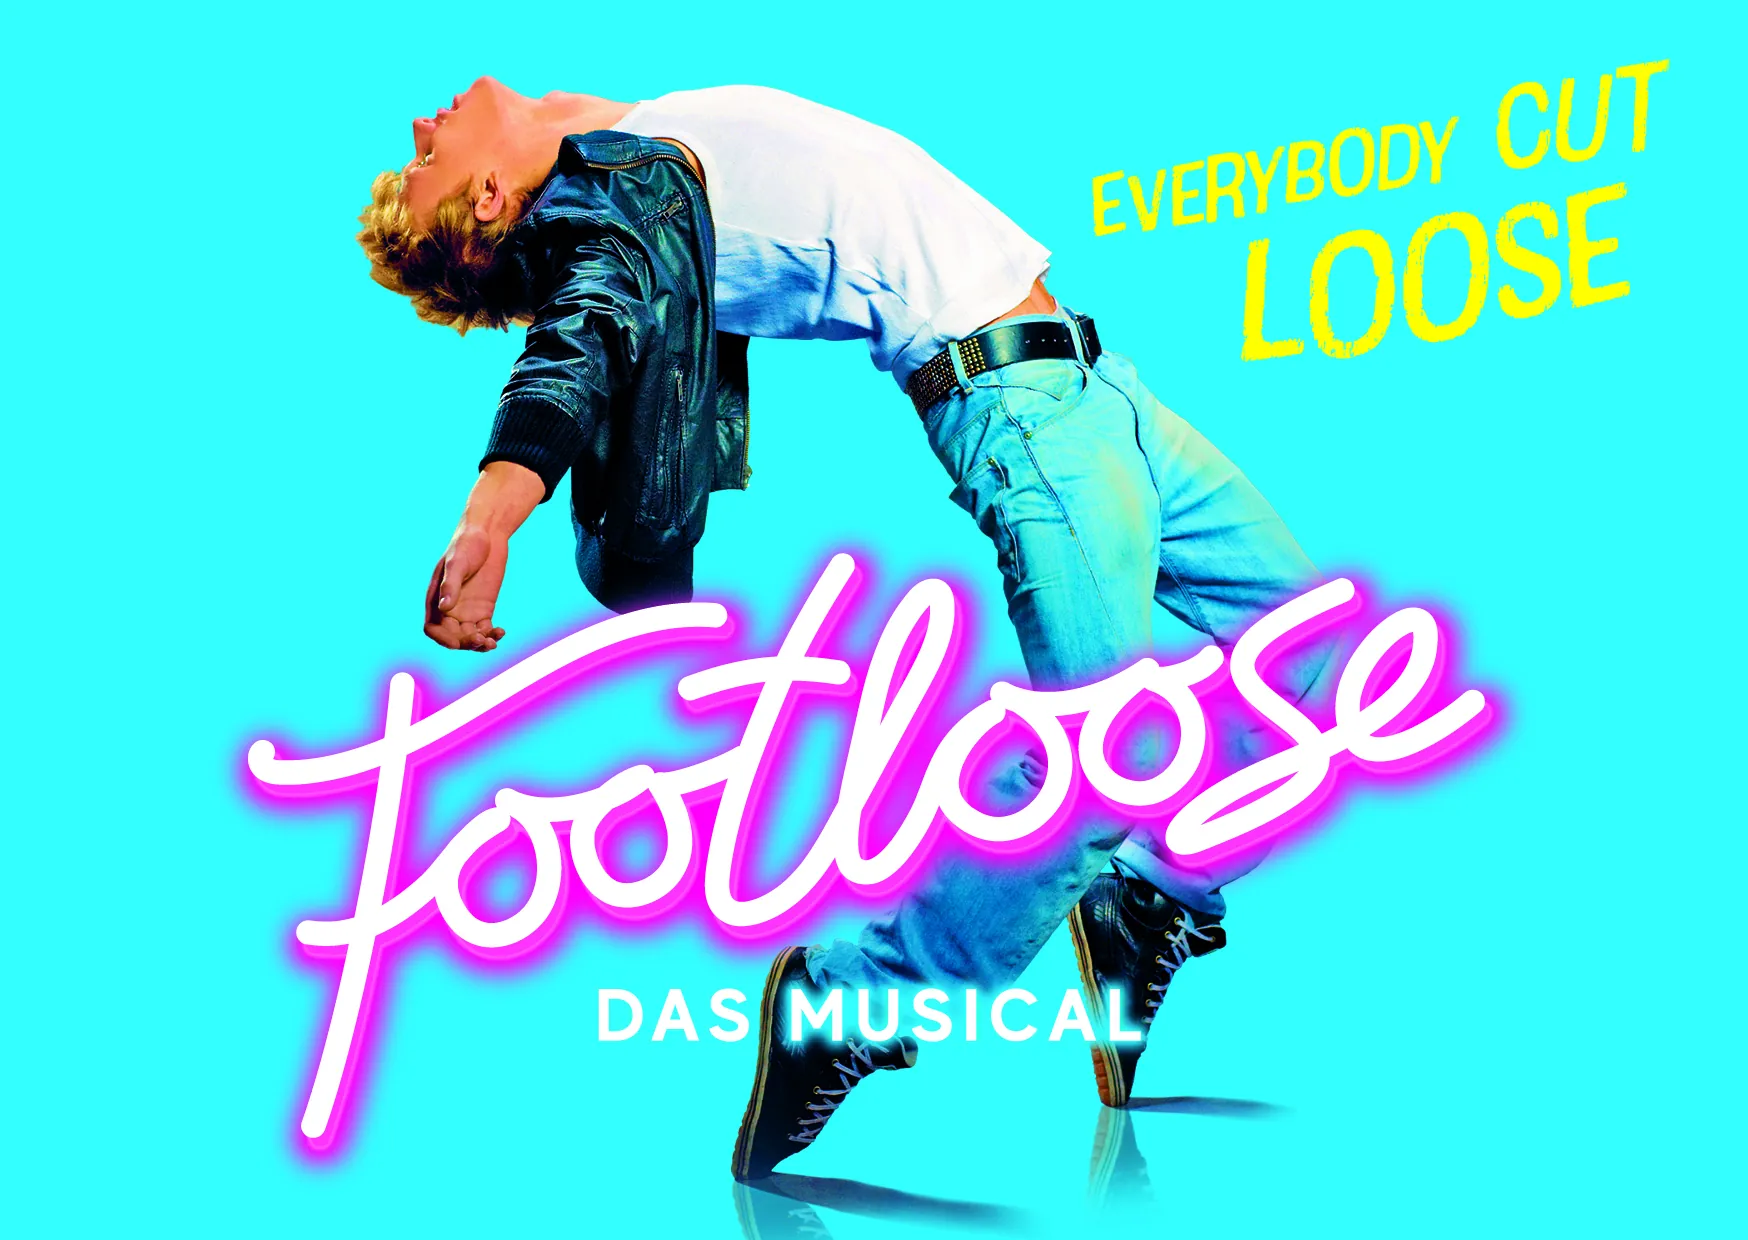 Footloose Musical - Keyvisual Jugendlicher im Vordergrund in Neonfarben - quad